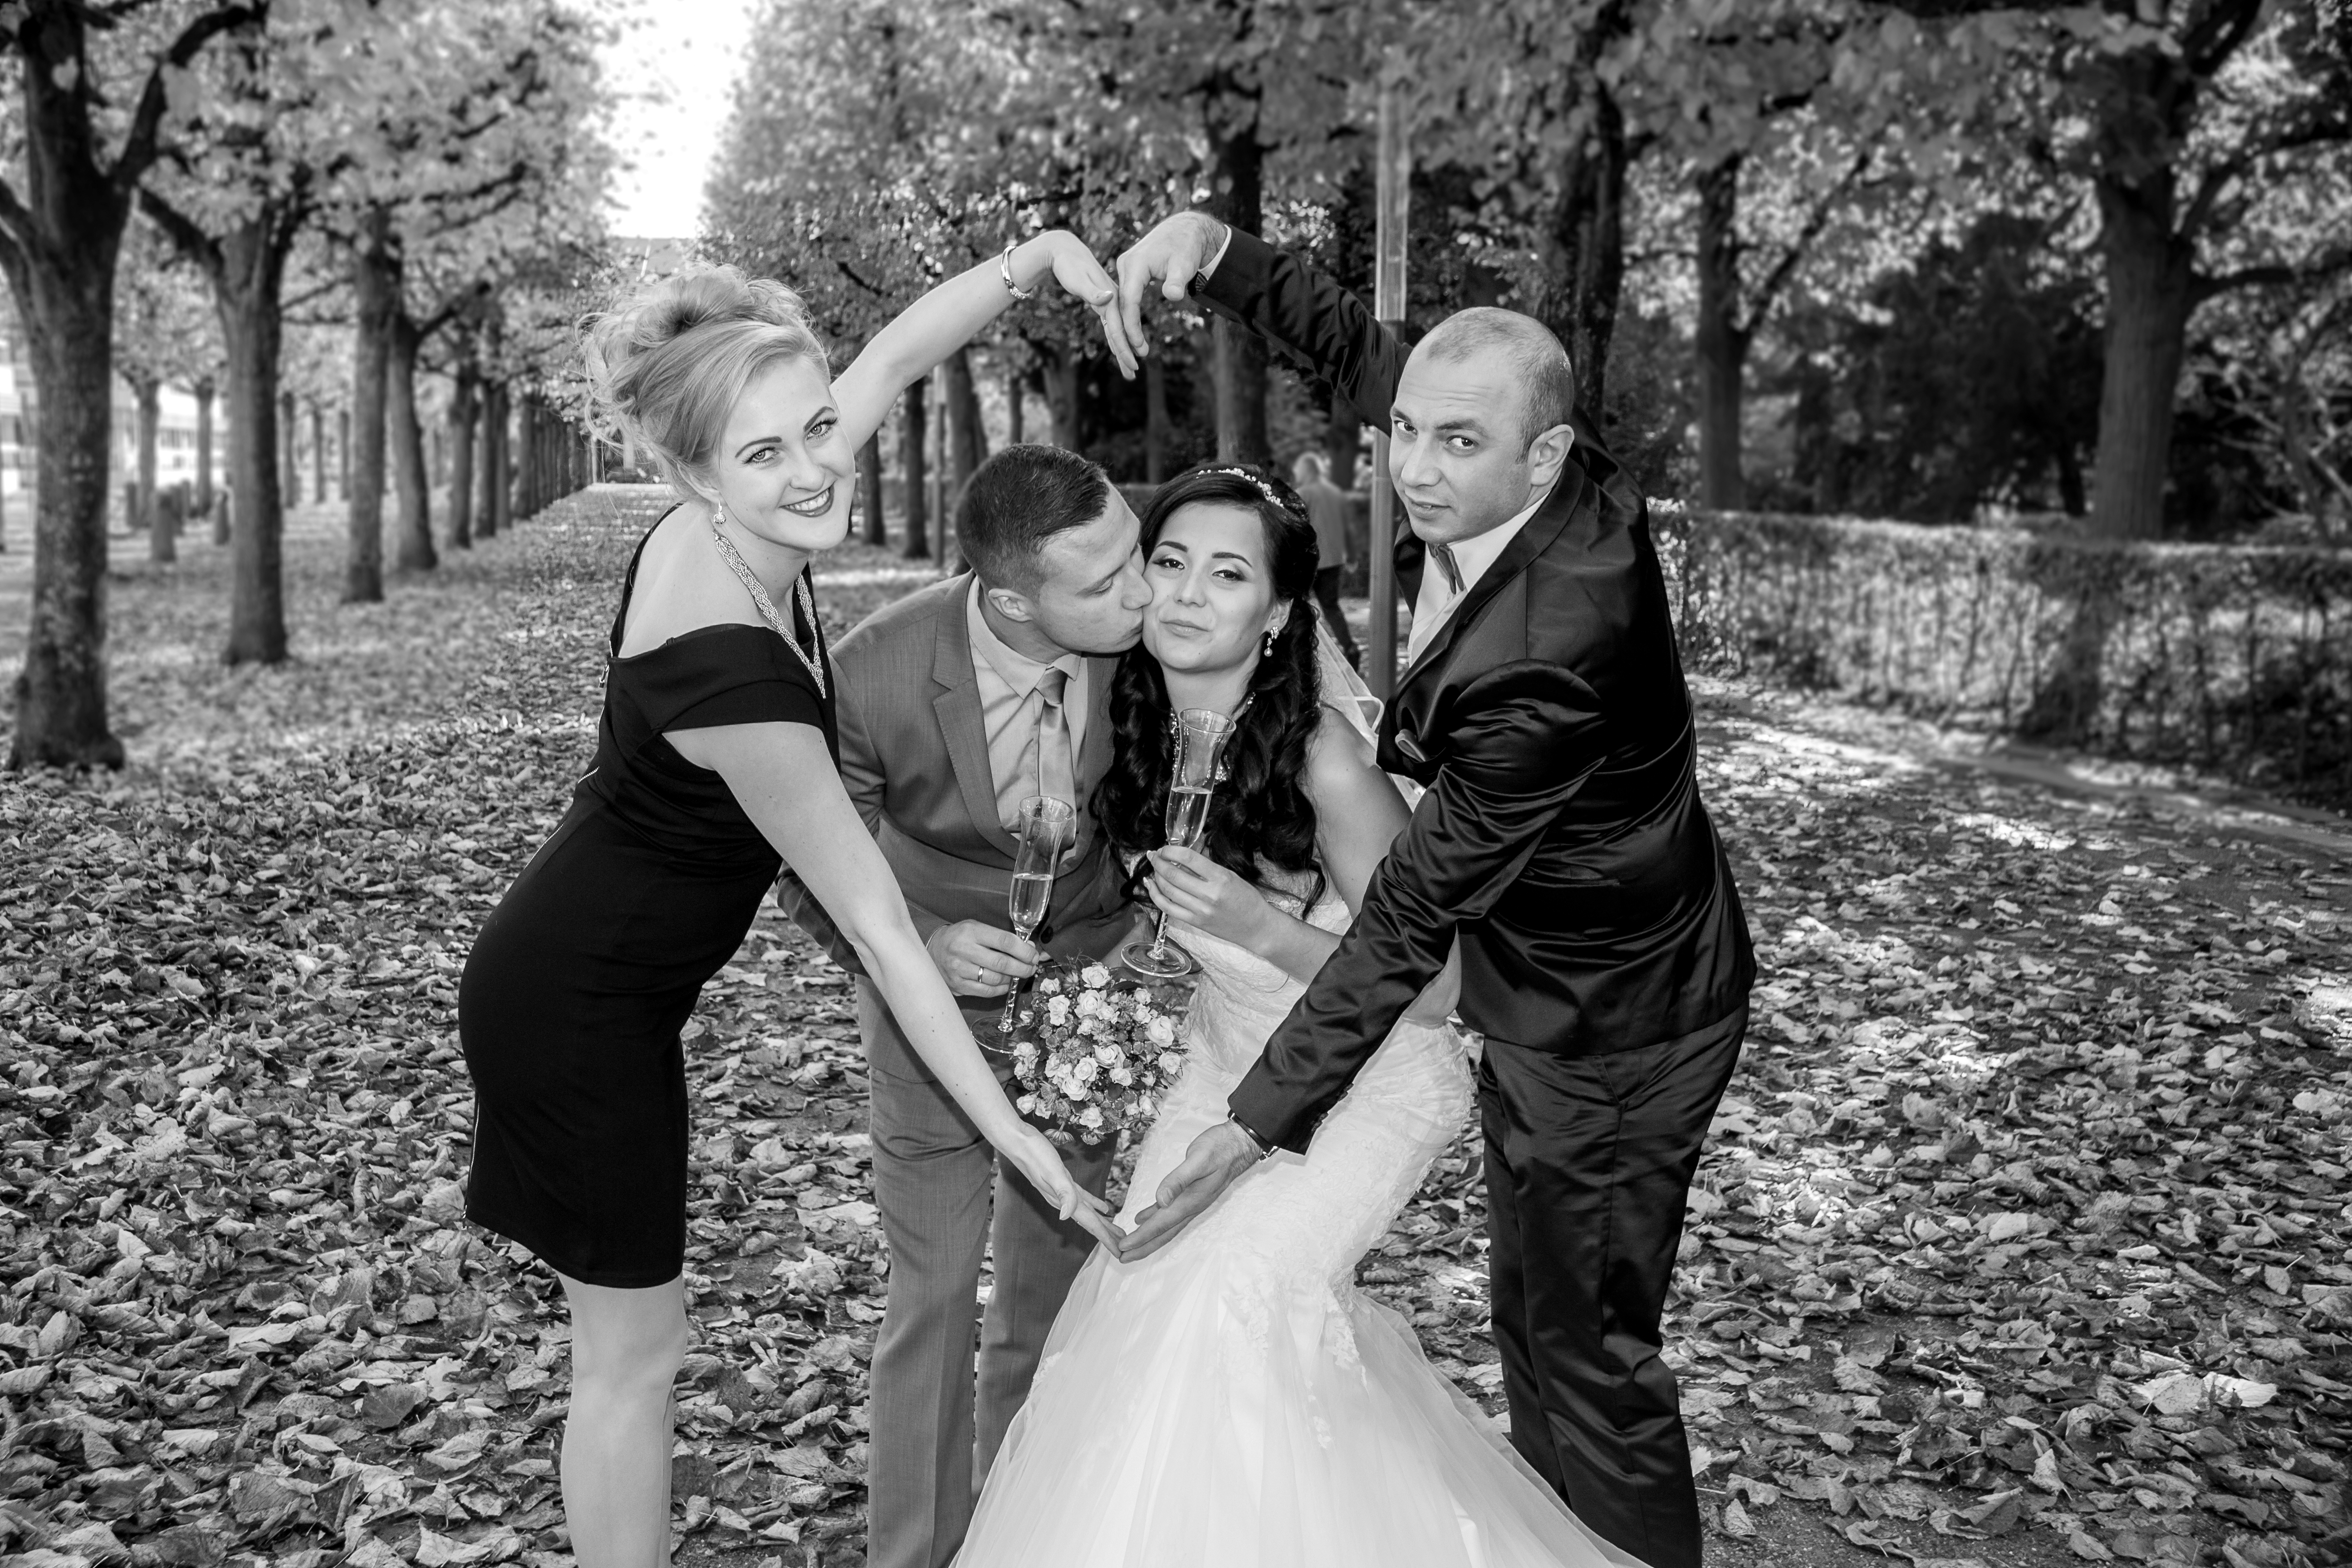 Hochzeitsfotograf Mannheim erstellt Hochzeitsreportagen, bietet Paarshootings &amp;amp; Videos im modernen, kreativen und echten Stil an